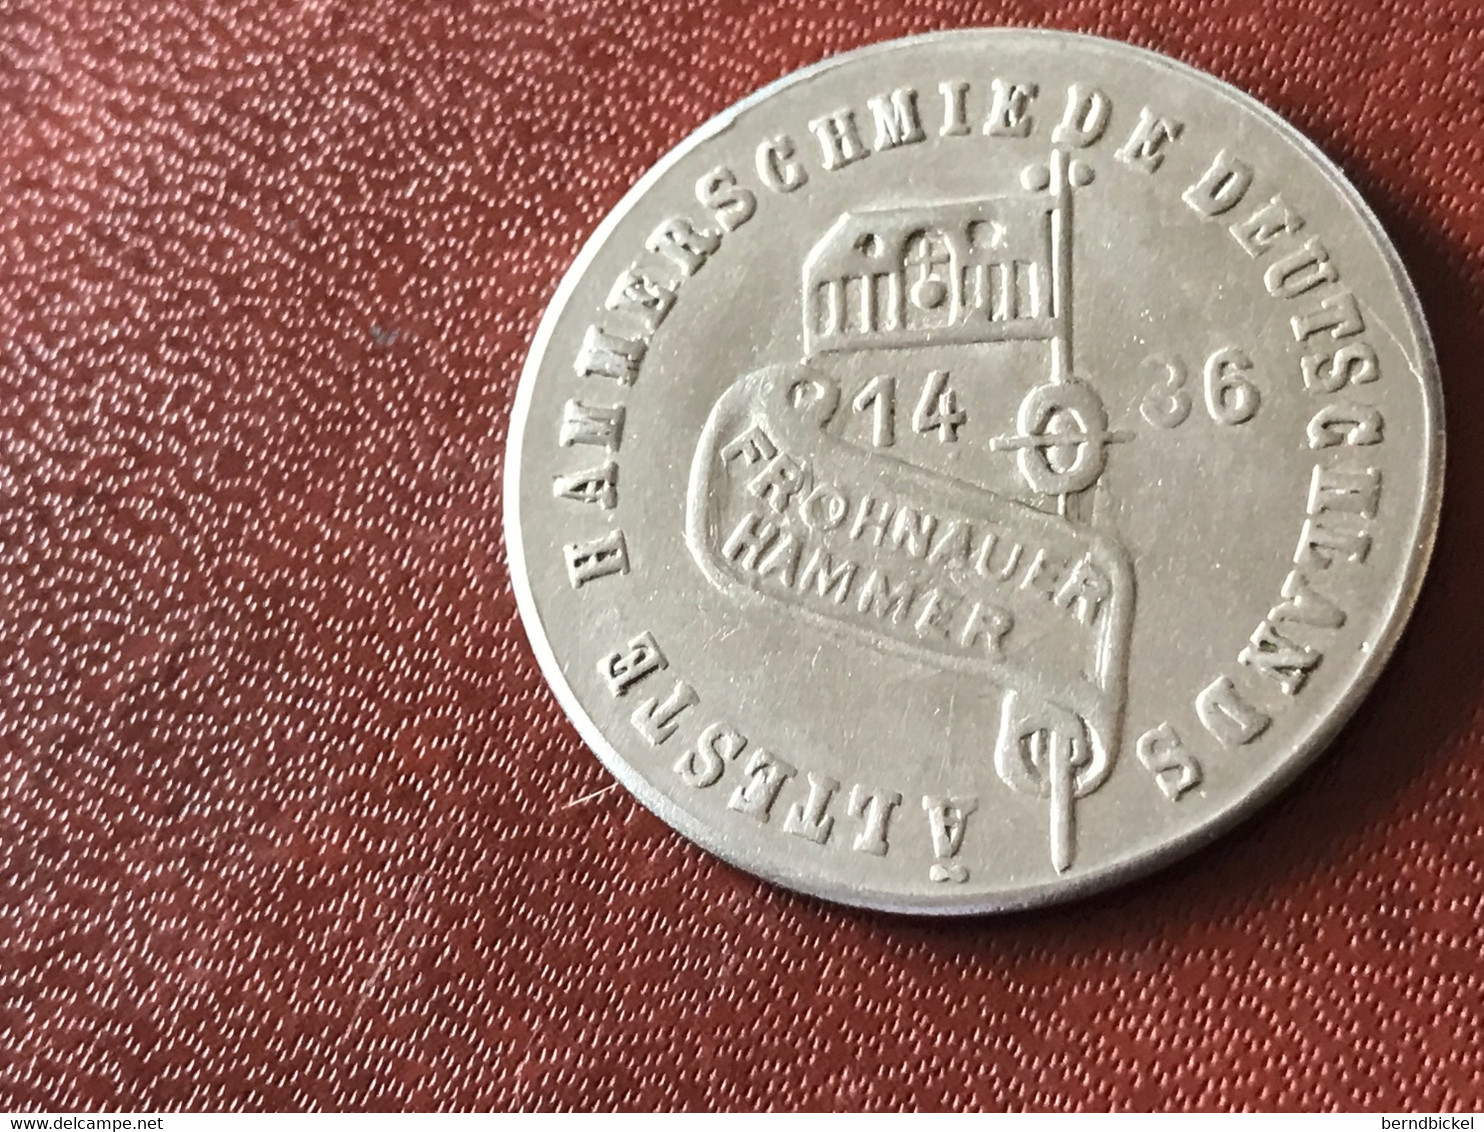 Münze Medaille Frohnauer Hammer 1436 - Souvenir-Medaille (elongated Coins)